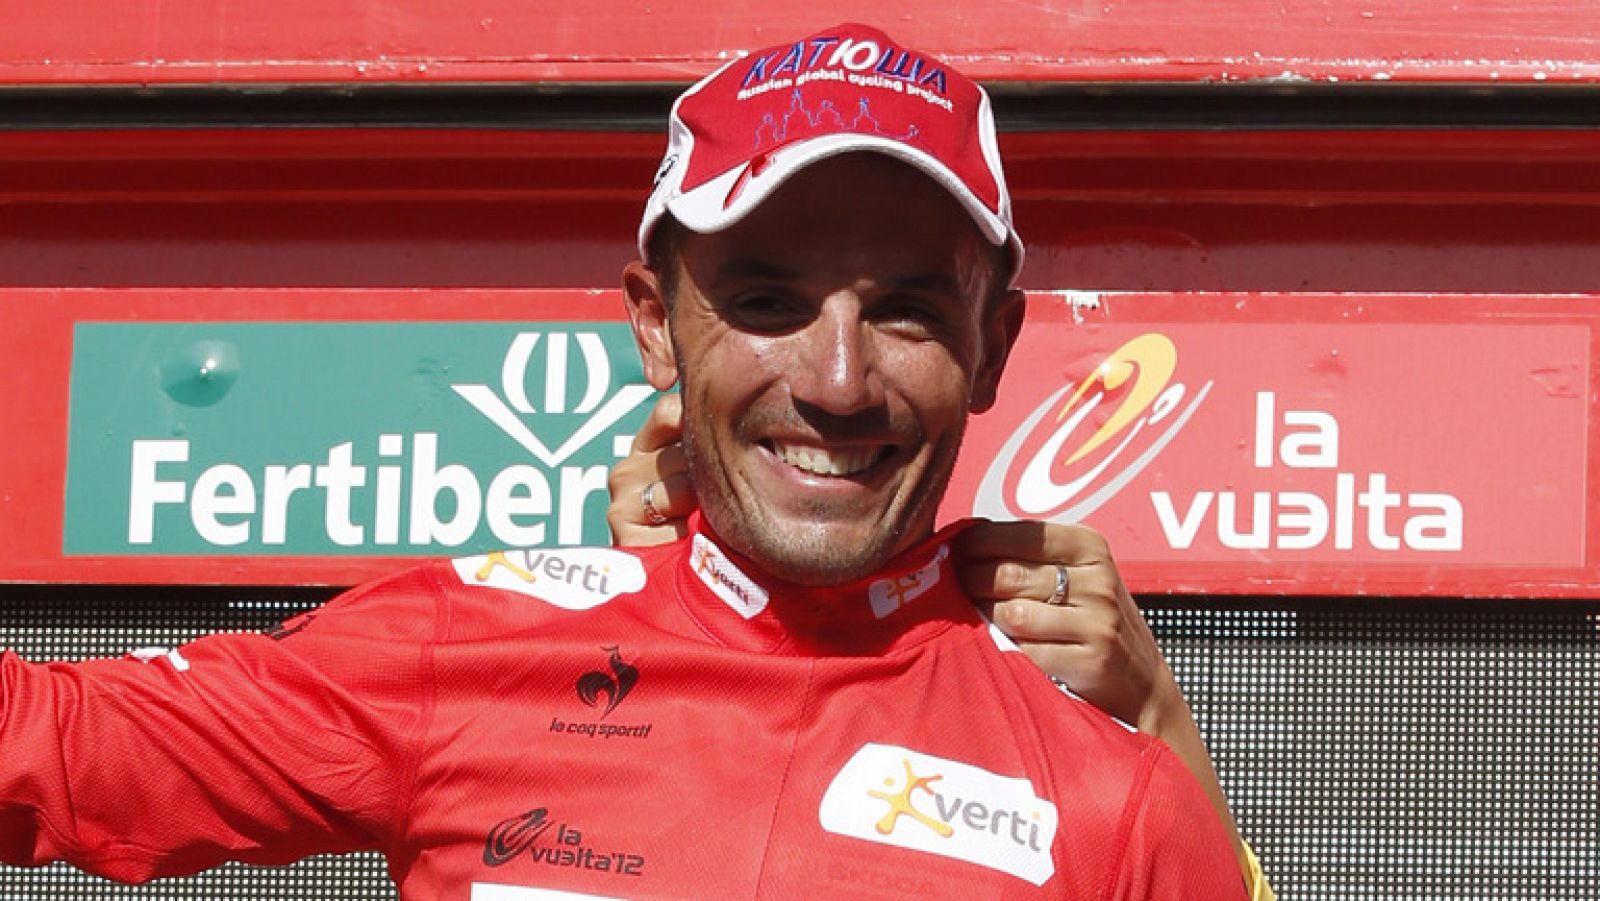 Joaquim "Purito" Rodriguez, líder de la Vuelta a España 2012, señalaba en la llegada a Logroño  "Hoy ha sido un día muy tranquilo, no había peligro salvo el final que ha sido un poco estresante, el resto hemos estado cómodos pero mañana tengo el día